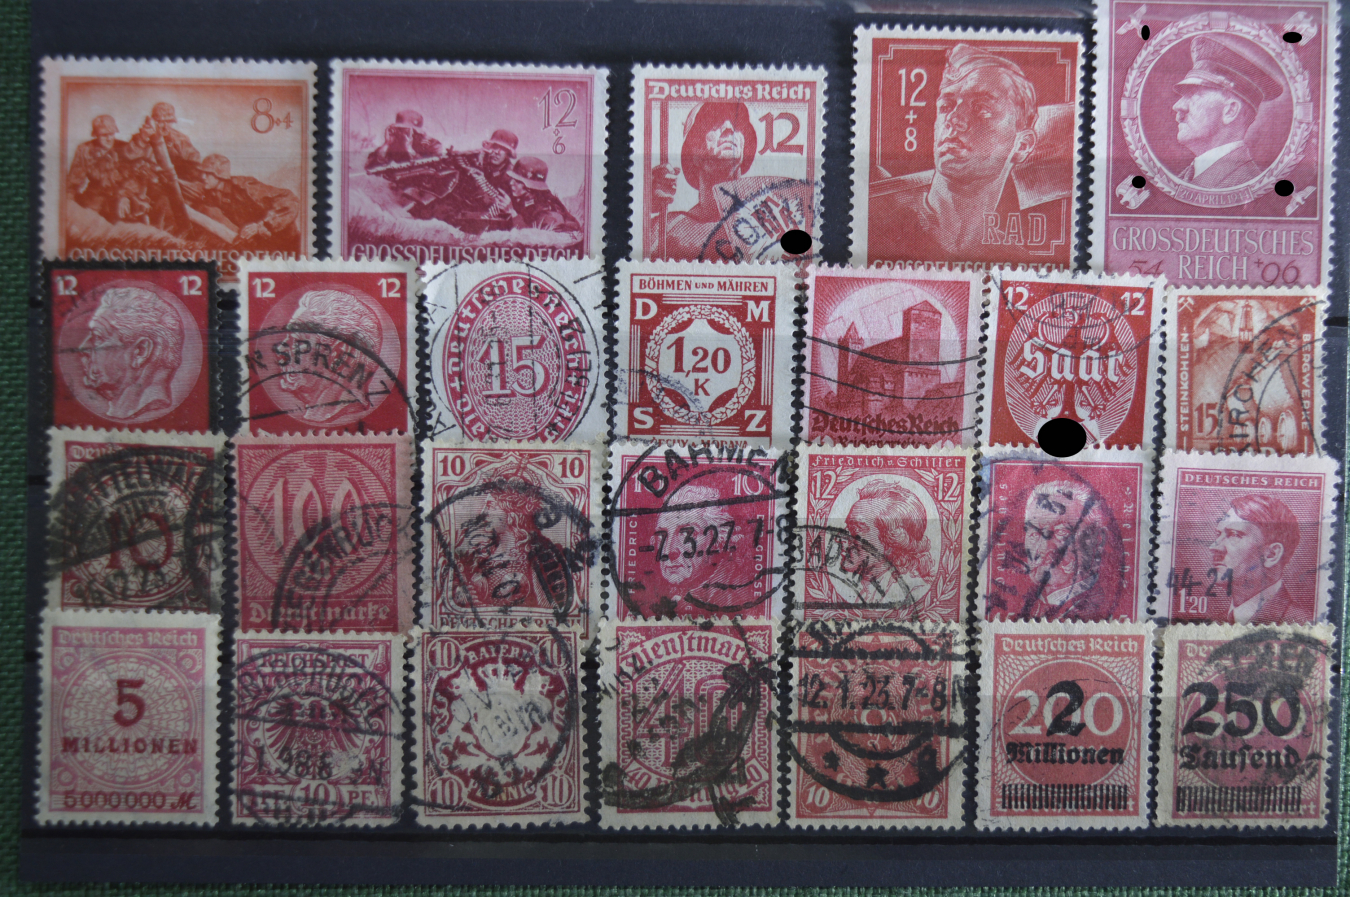 Купить марки германии. Почтовые марки Германия Рейх. Почтовая марка Deutsches Reich. Марки Веймар Германия. El-stamps почтовые марки.